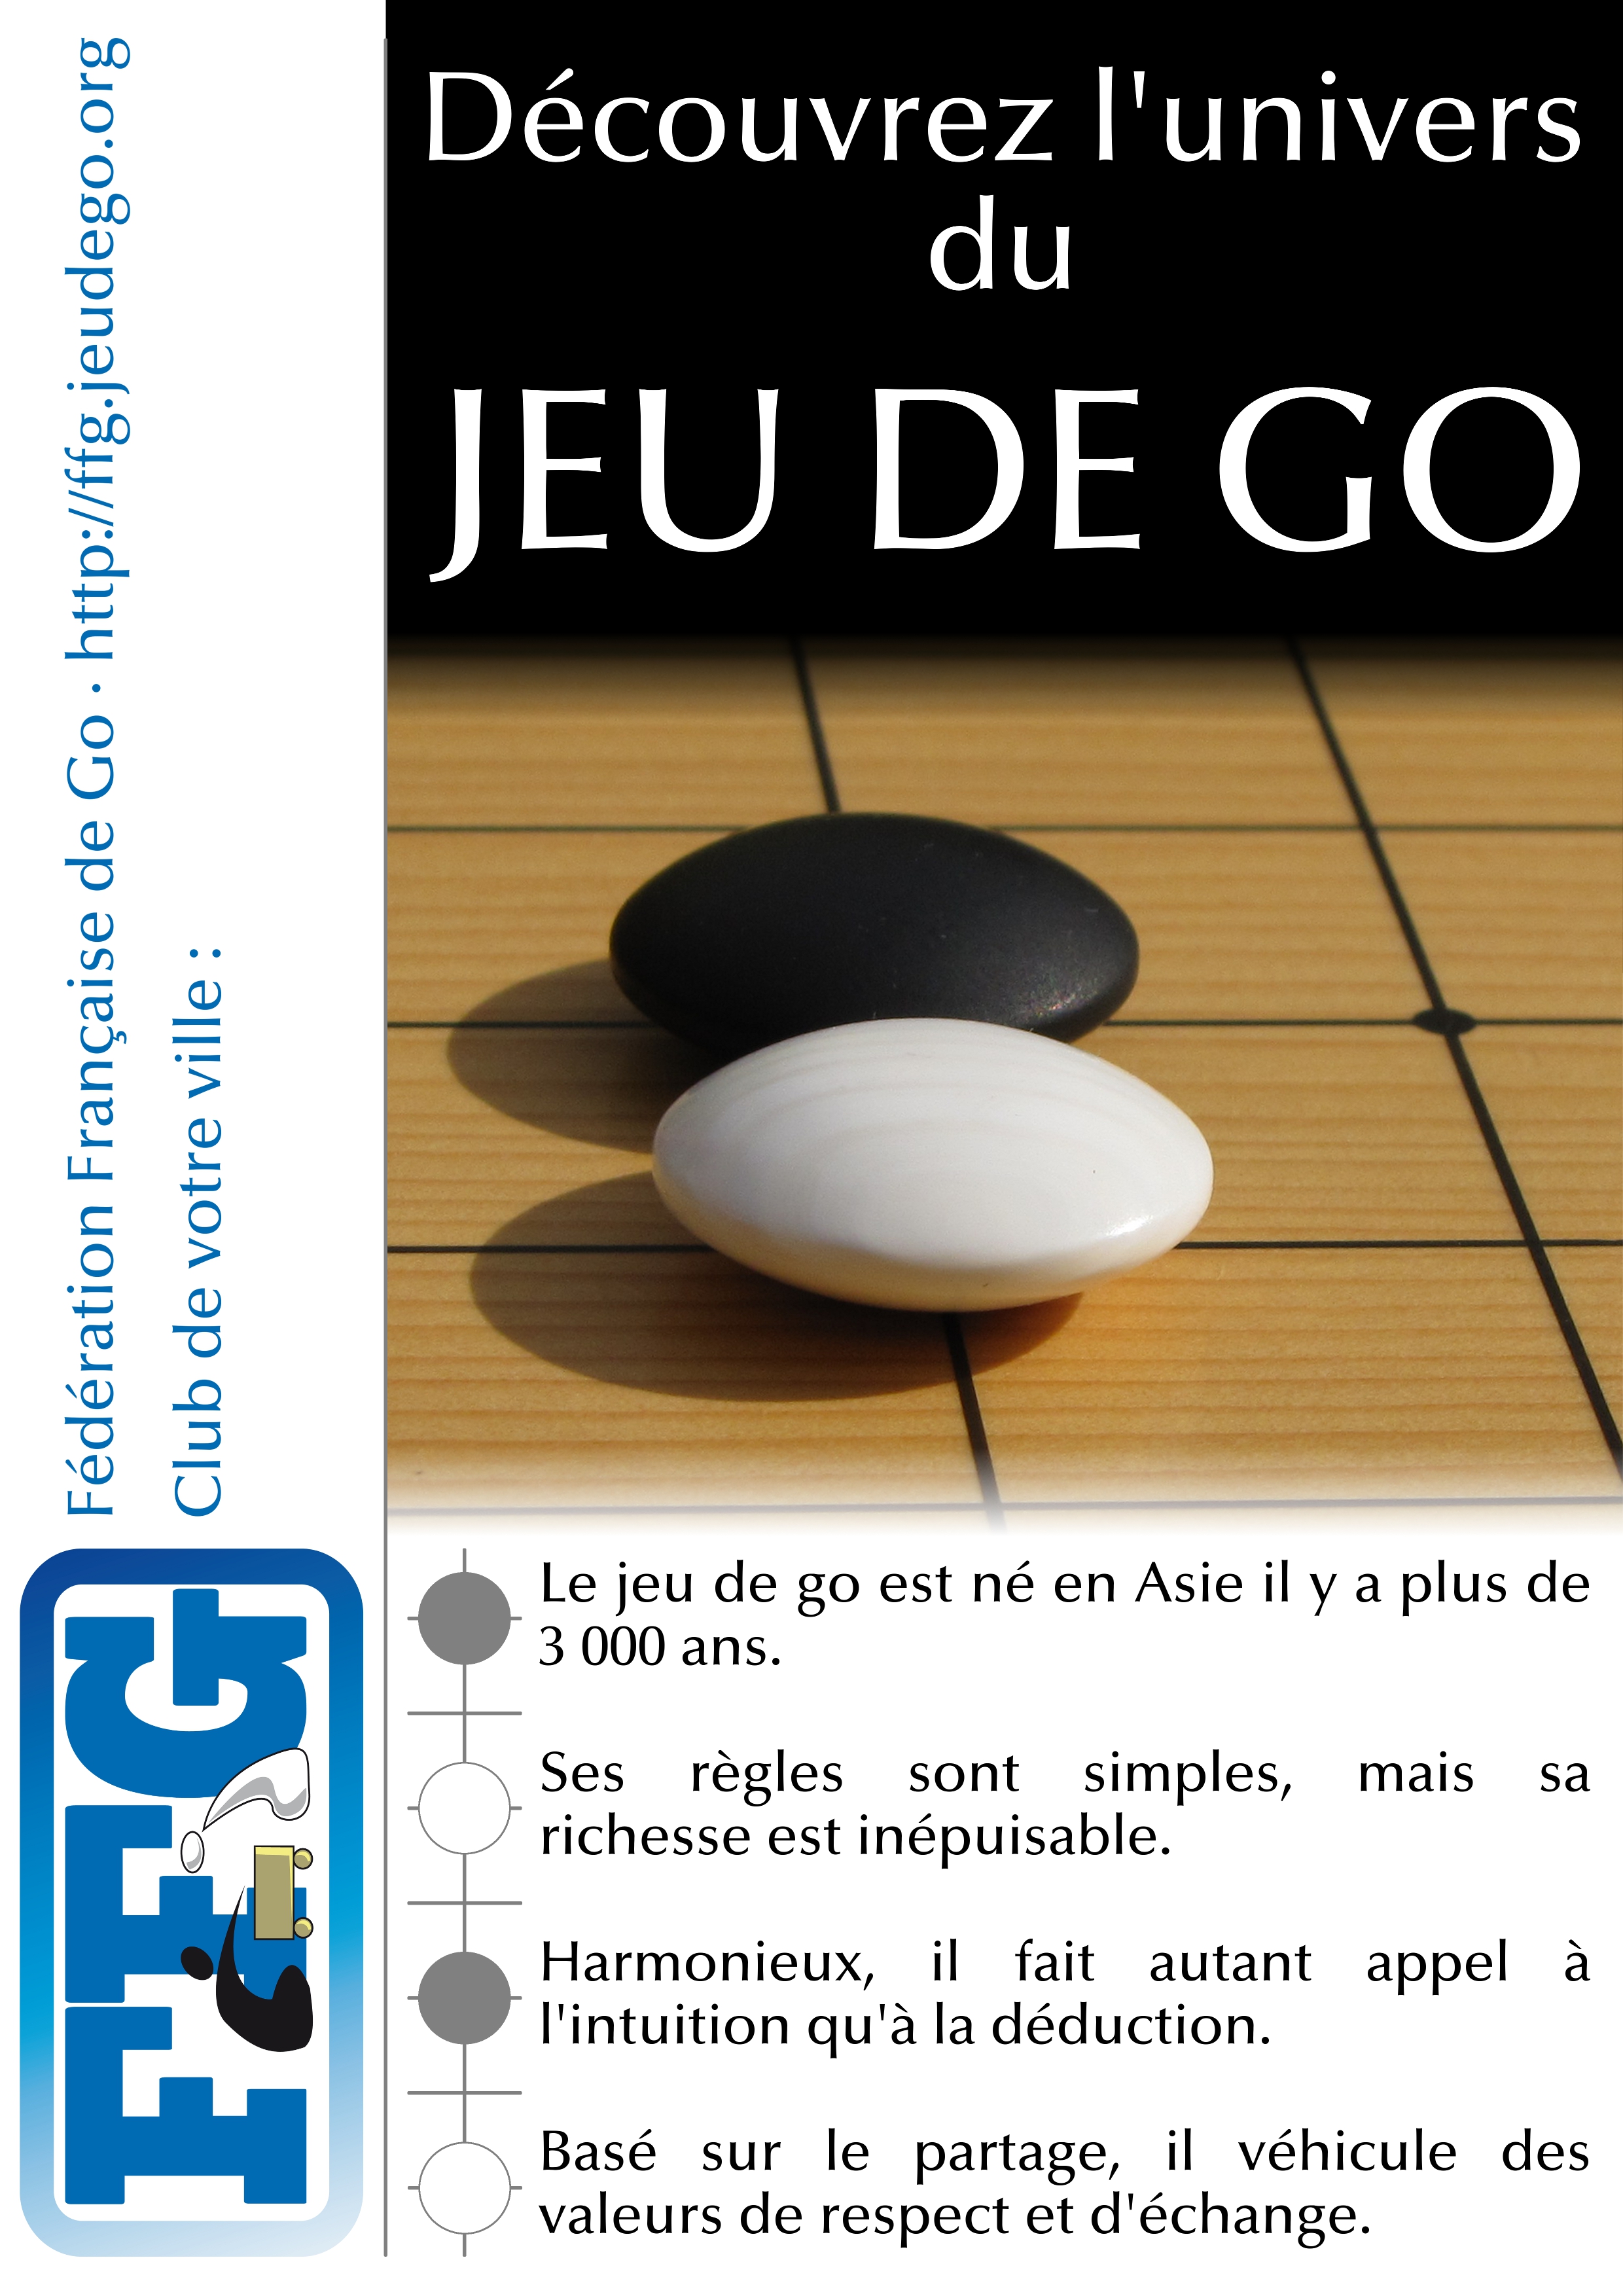 Plateau, boîte et jetons de jeu de go - Portail officiel des Musées de Reims